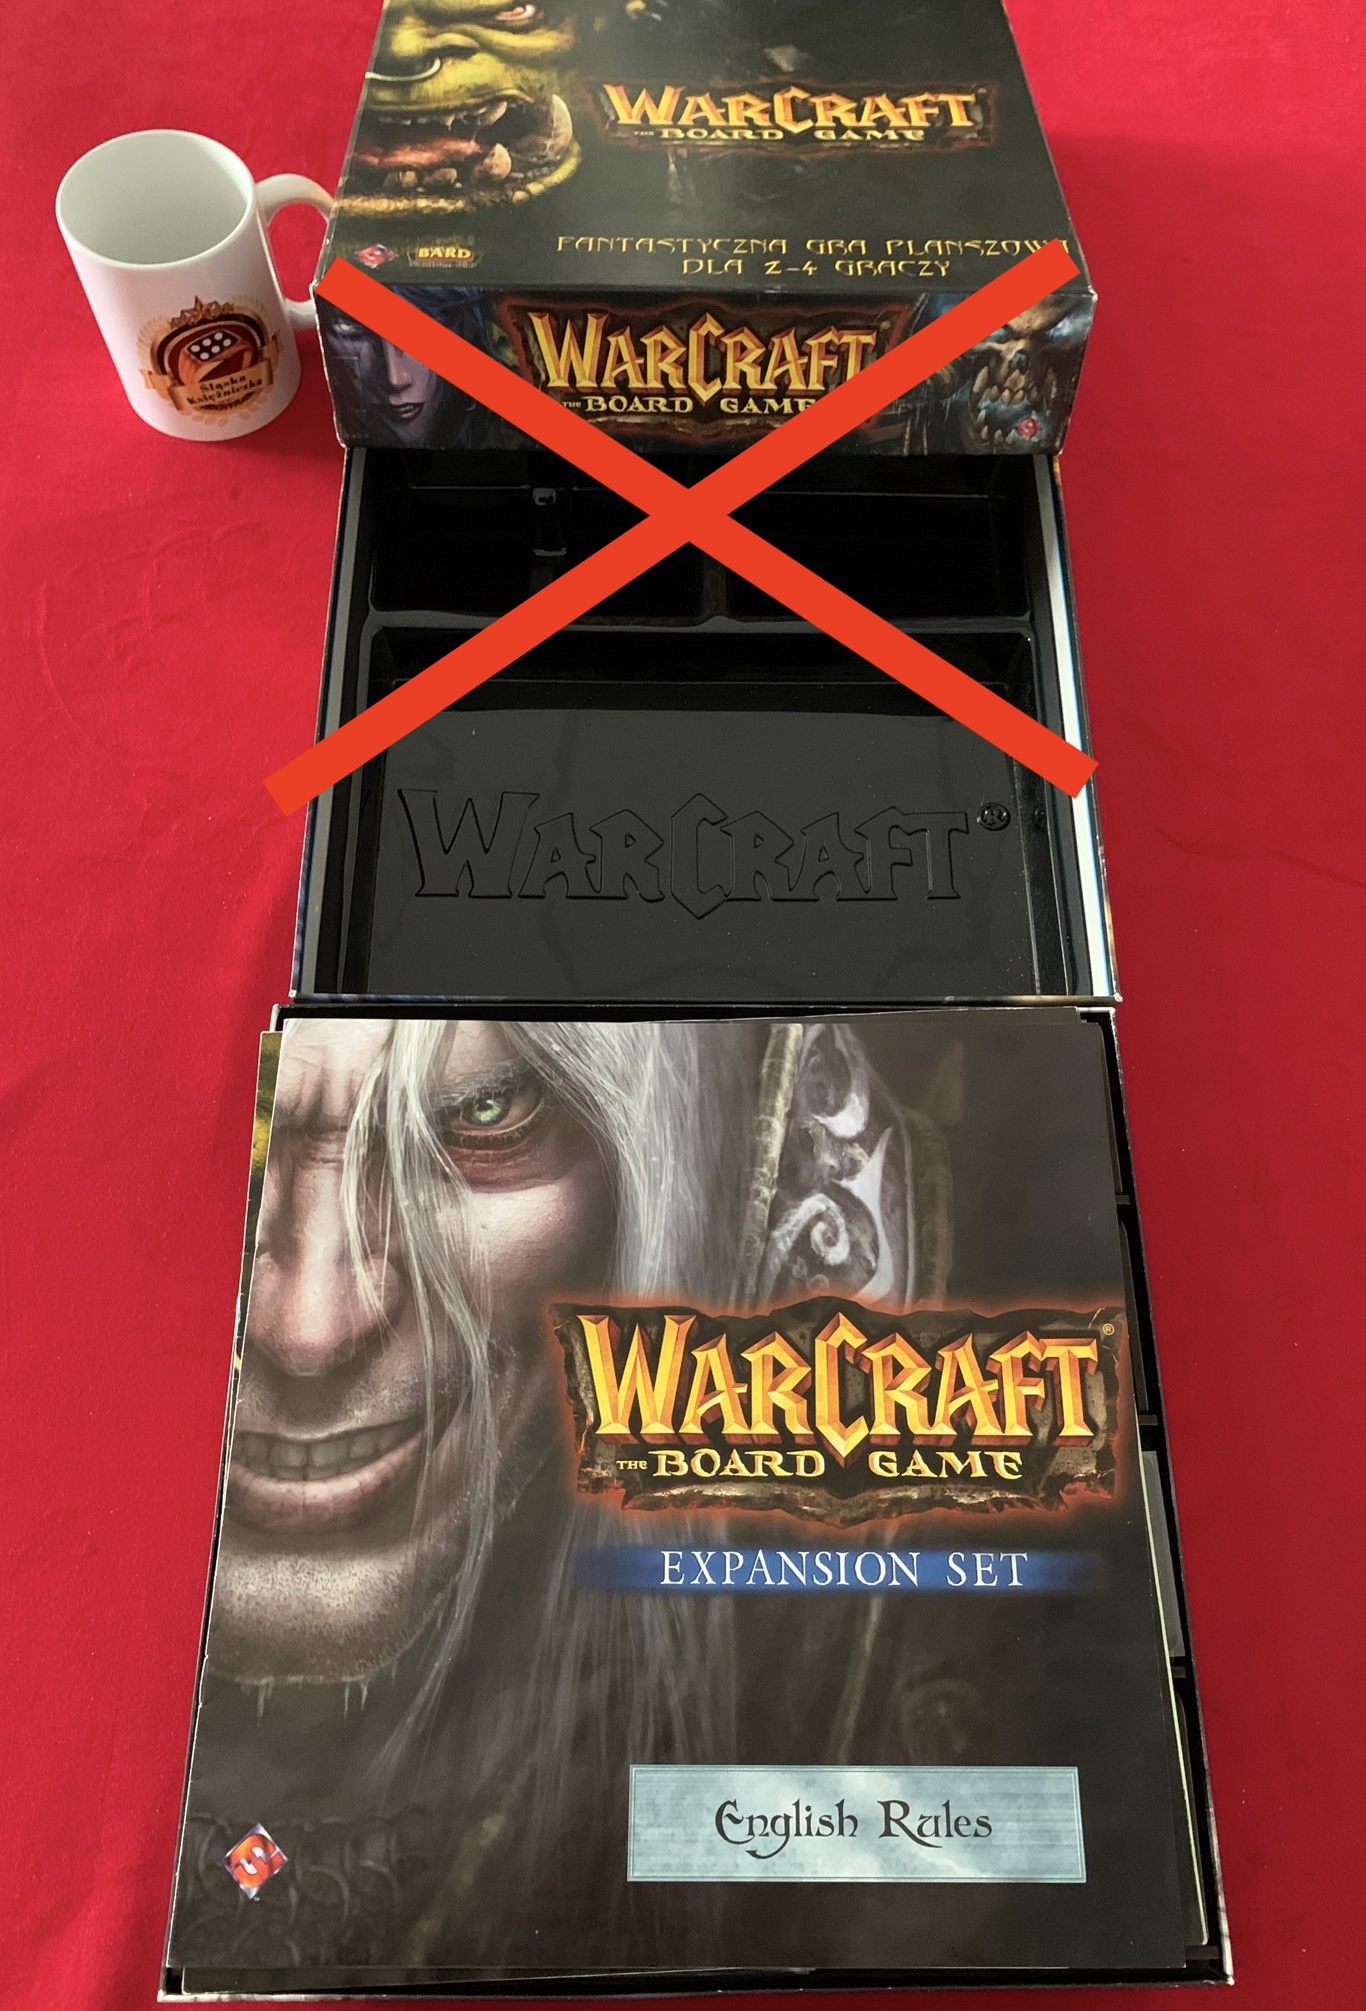 Insert Warcraft